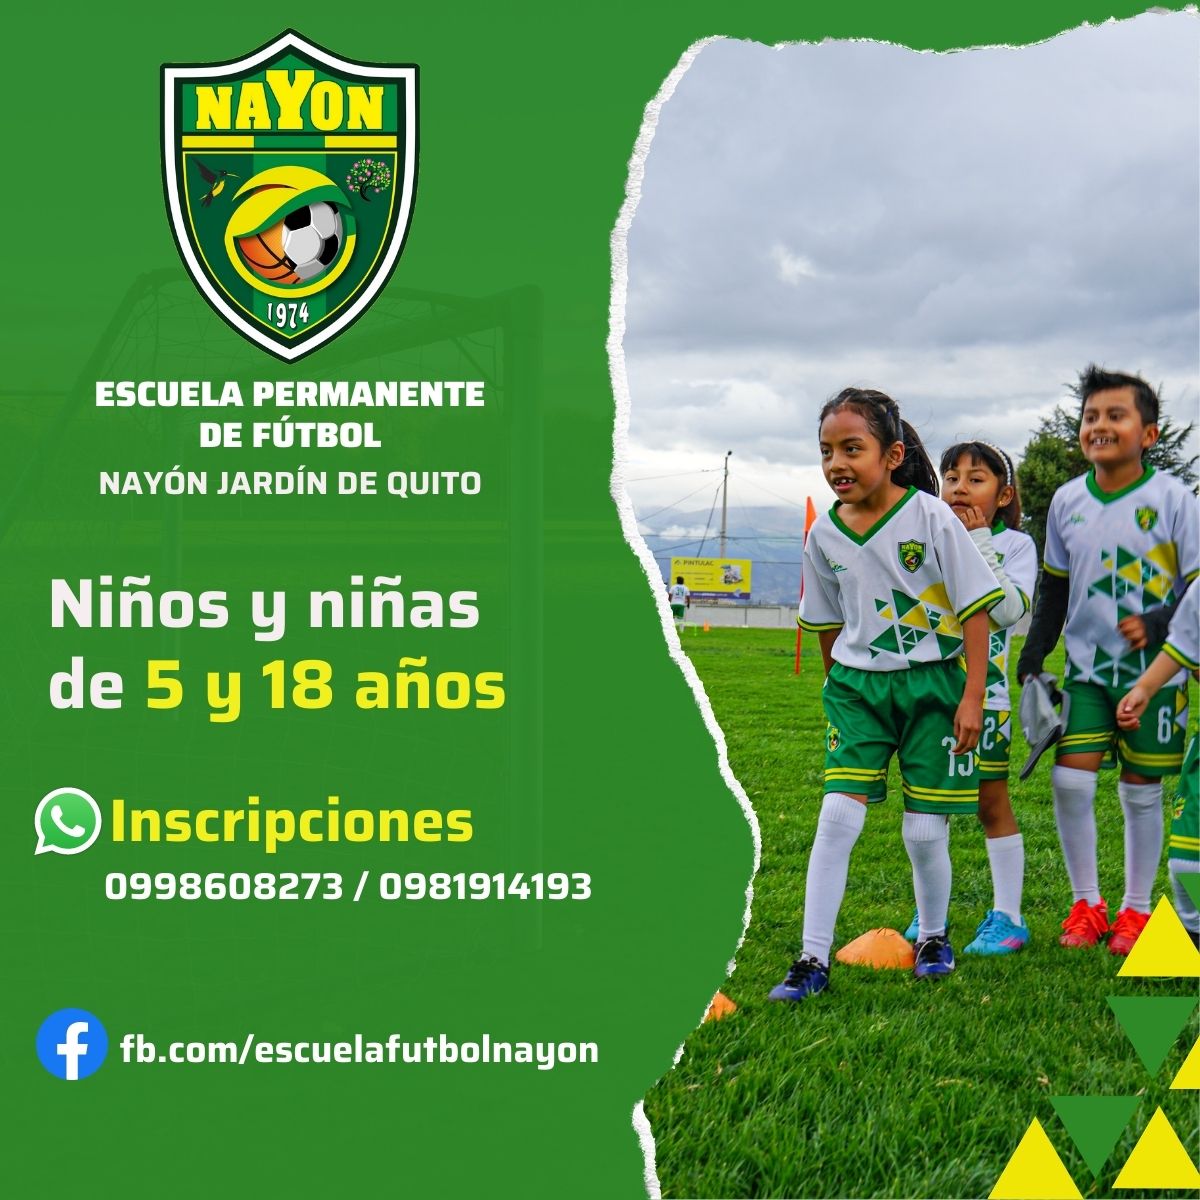 Escuela Permanente de Fútbol para niños y niñas, Liga Deportiva Parroquial Nayón